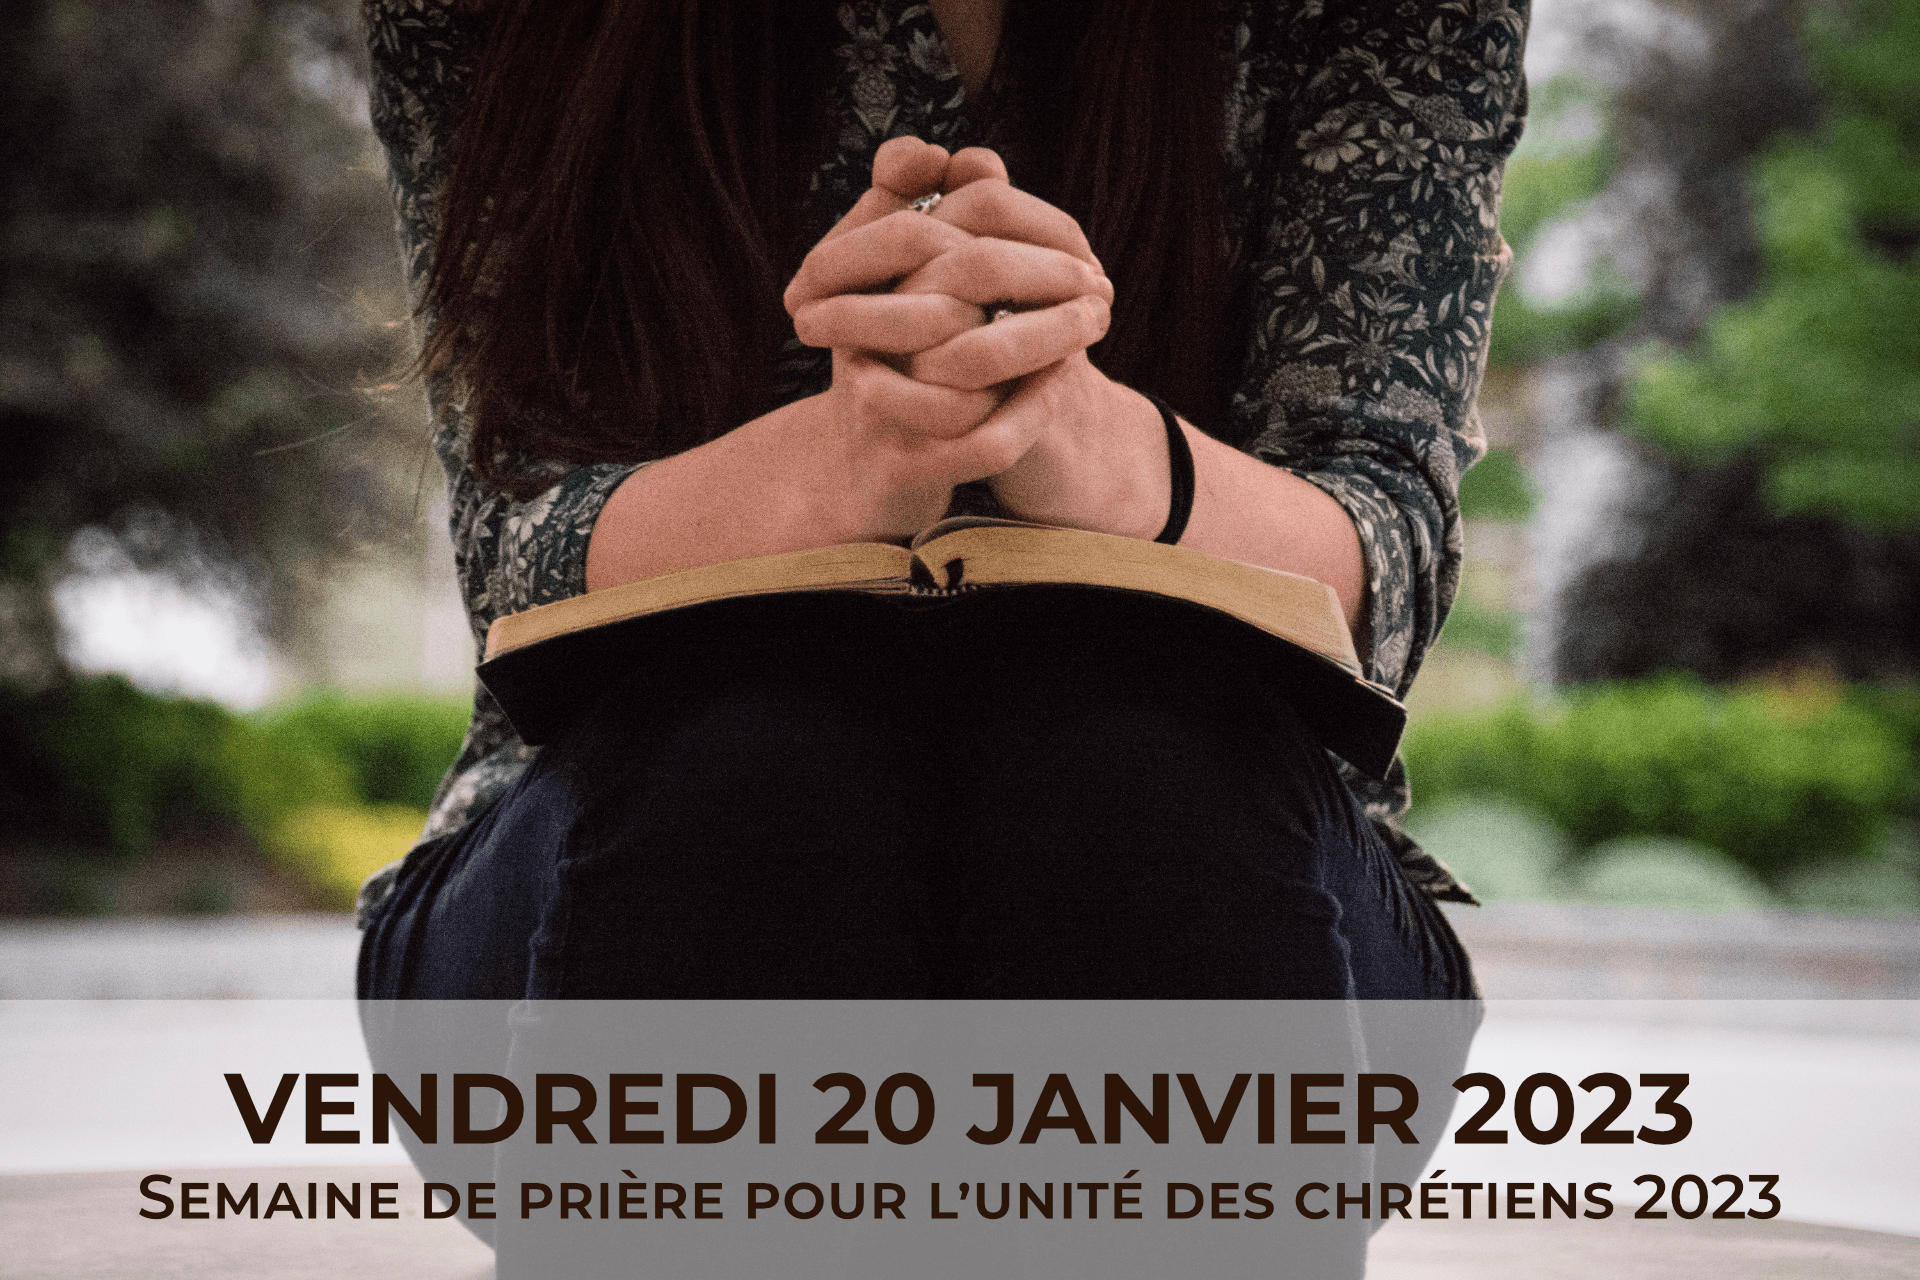 Semaine de prière pour l'unité des chrétiens 2023